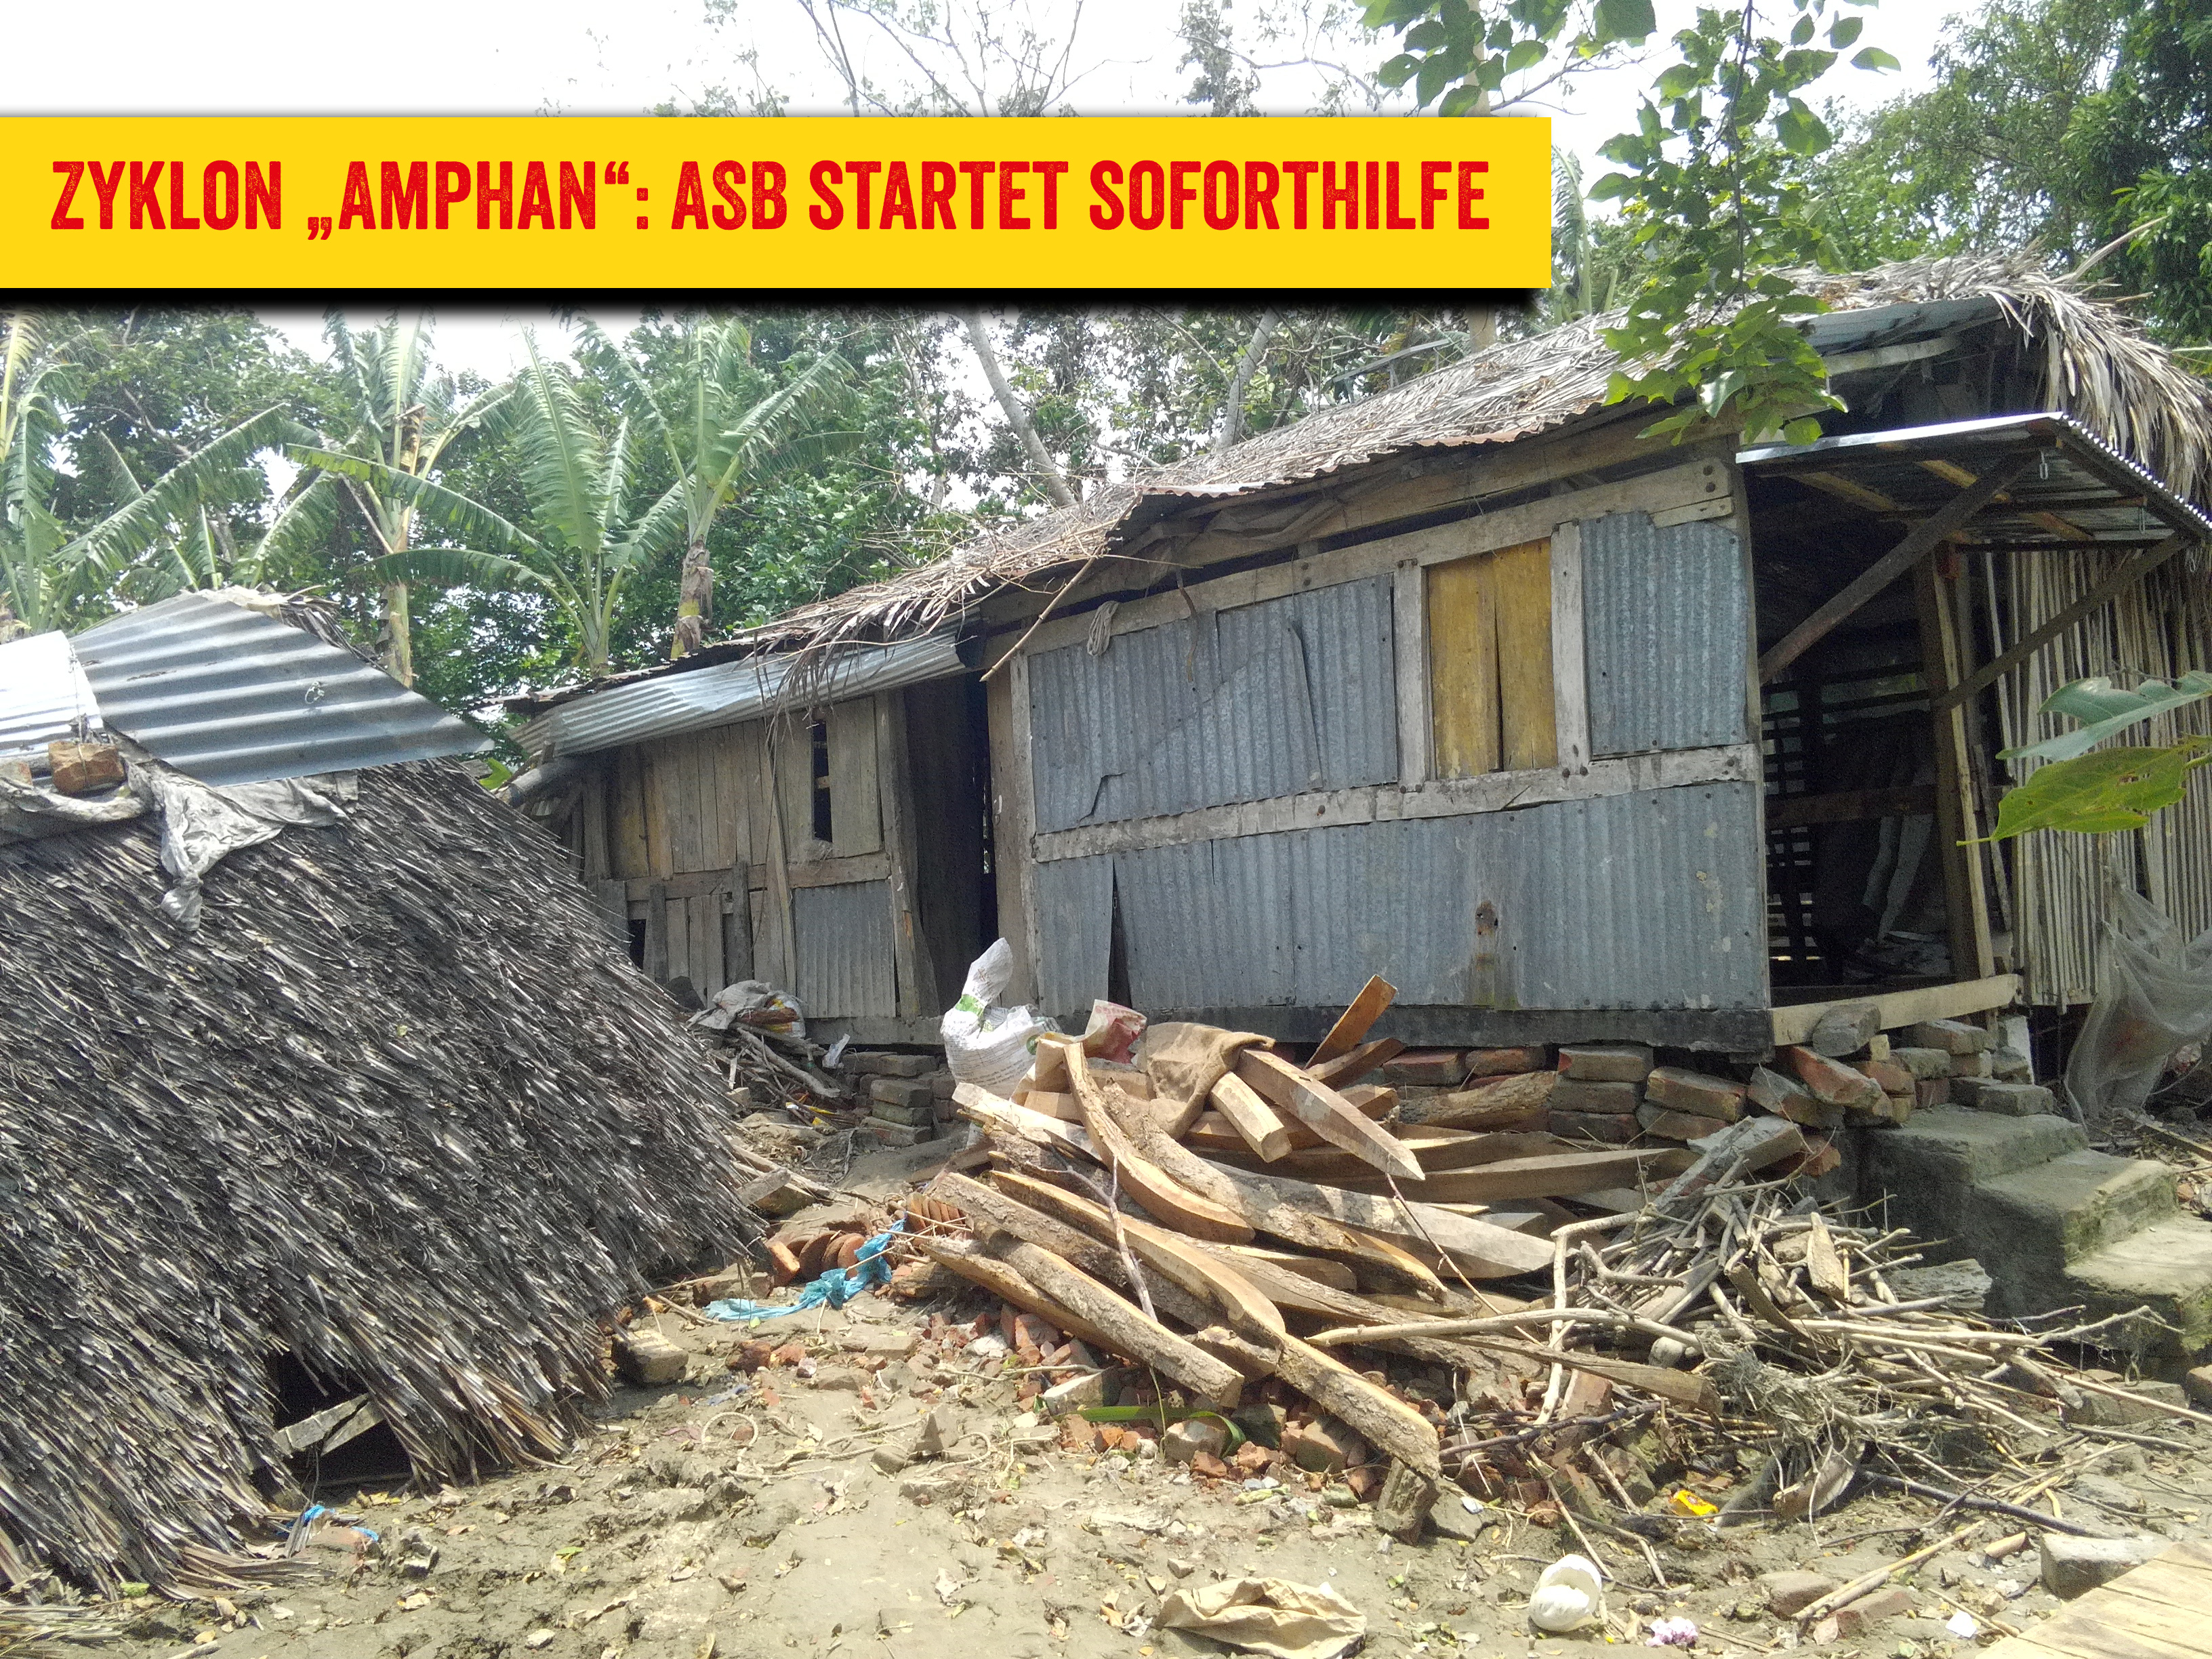 Zyklon „Amphan“: ASB startet Soforthilfe in Bangladesch